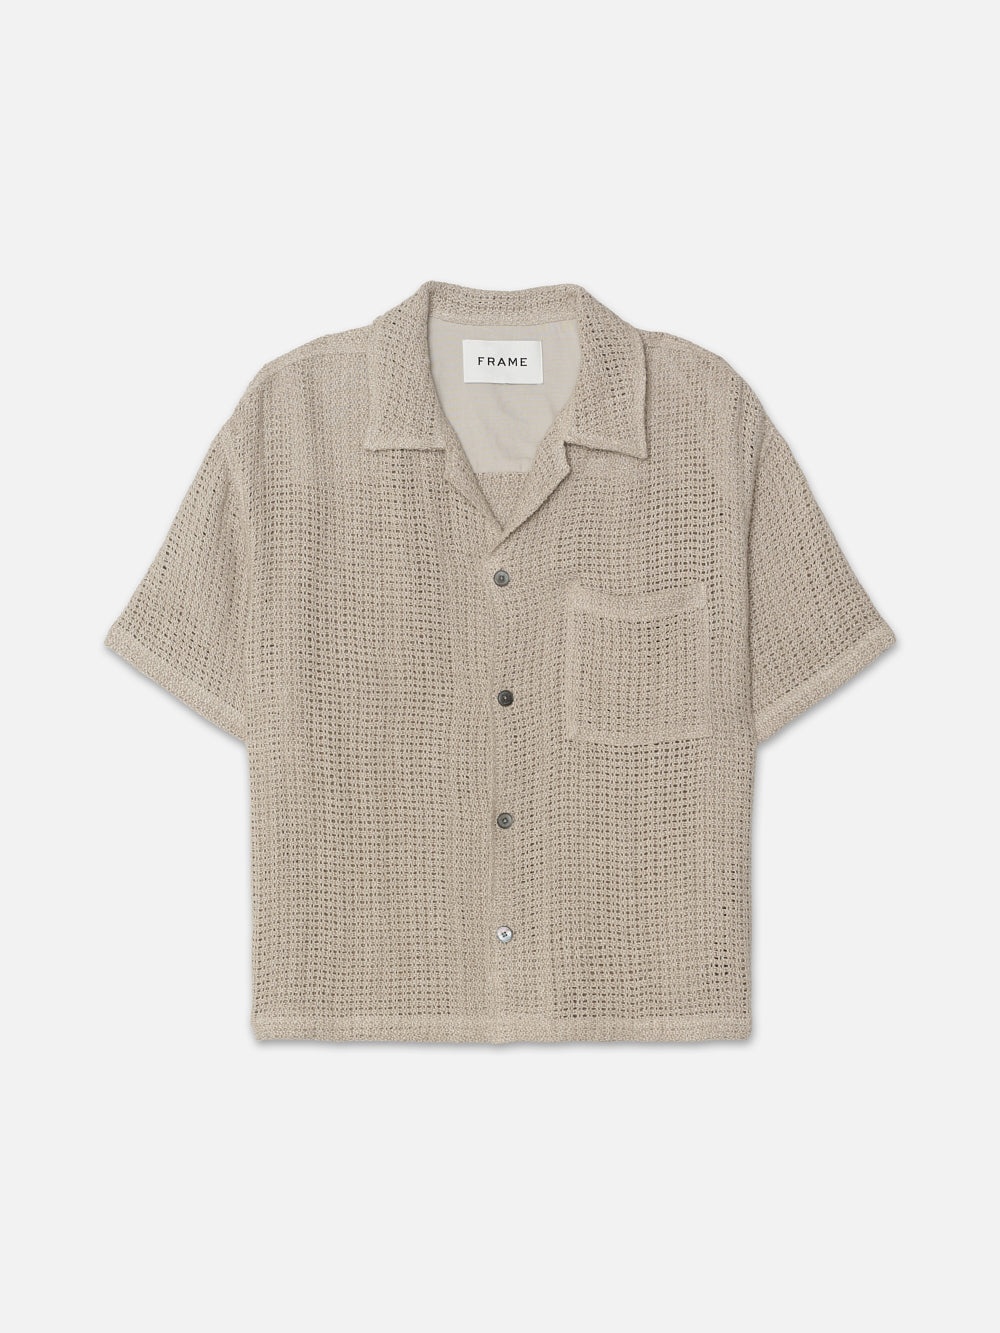 Open Weave Short Sleeve Shirt in Smoke Beige - 1